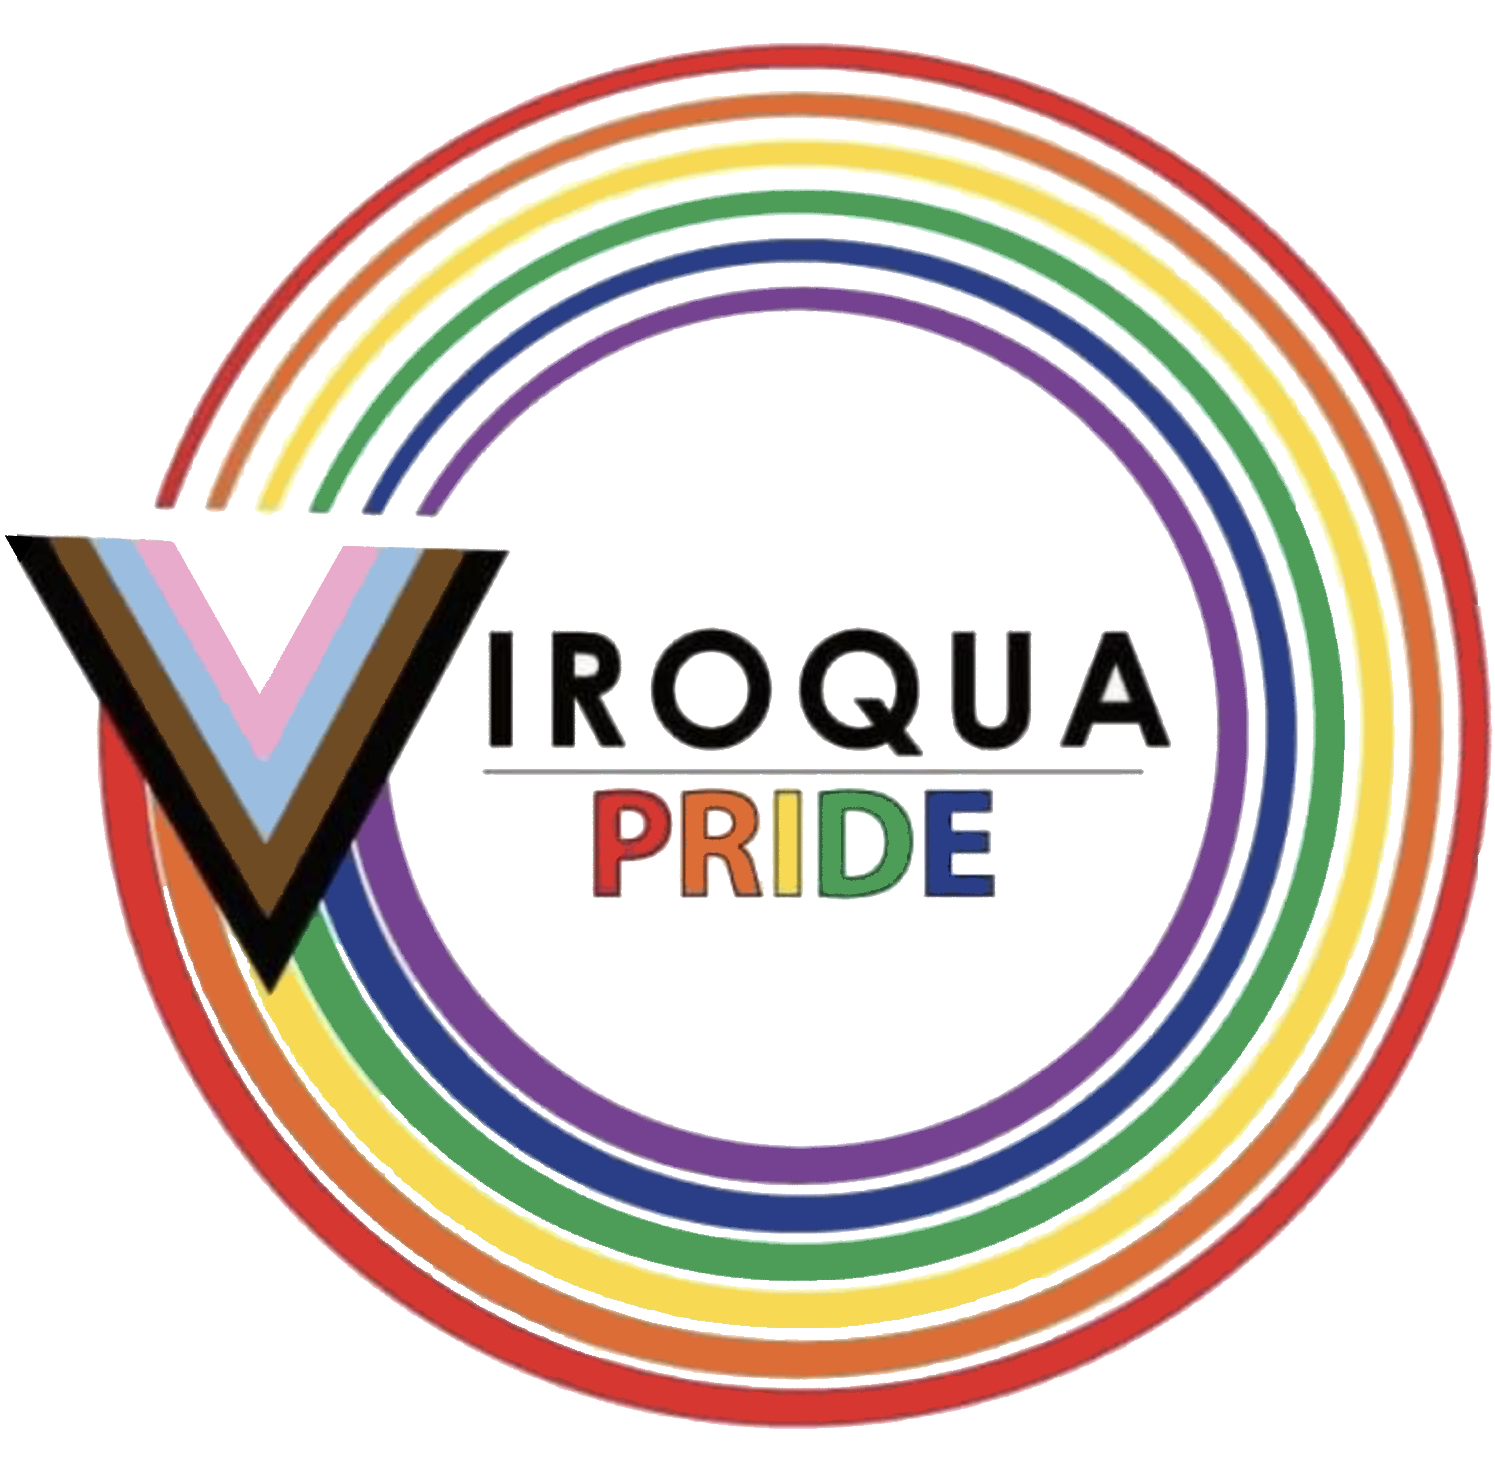 Viroqua Pride